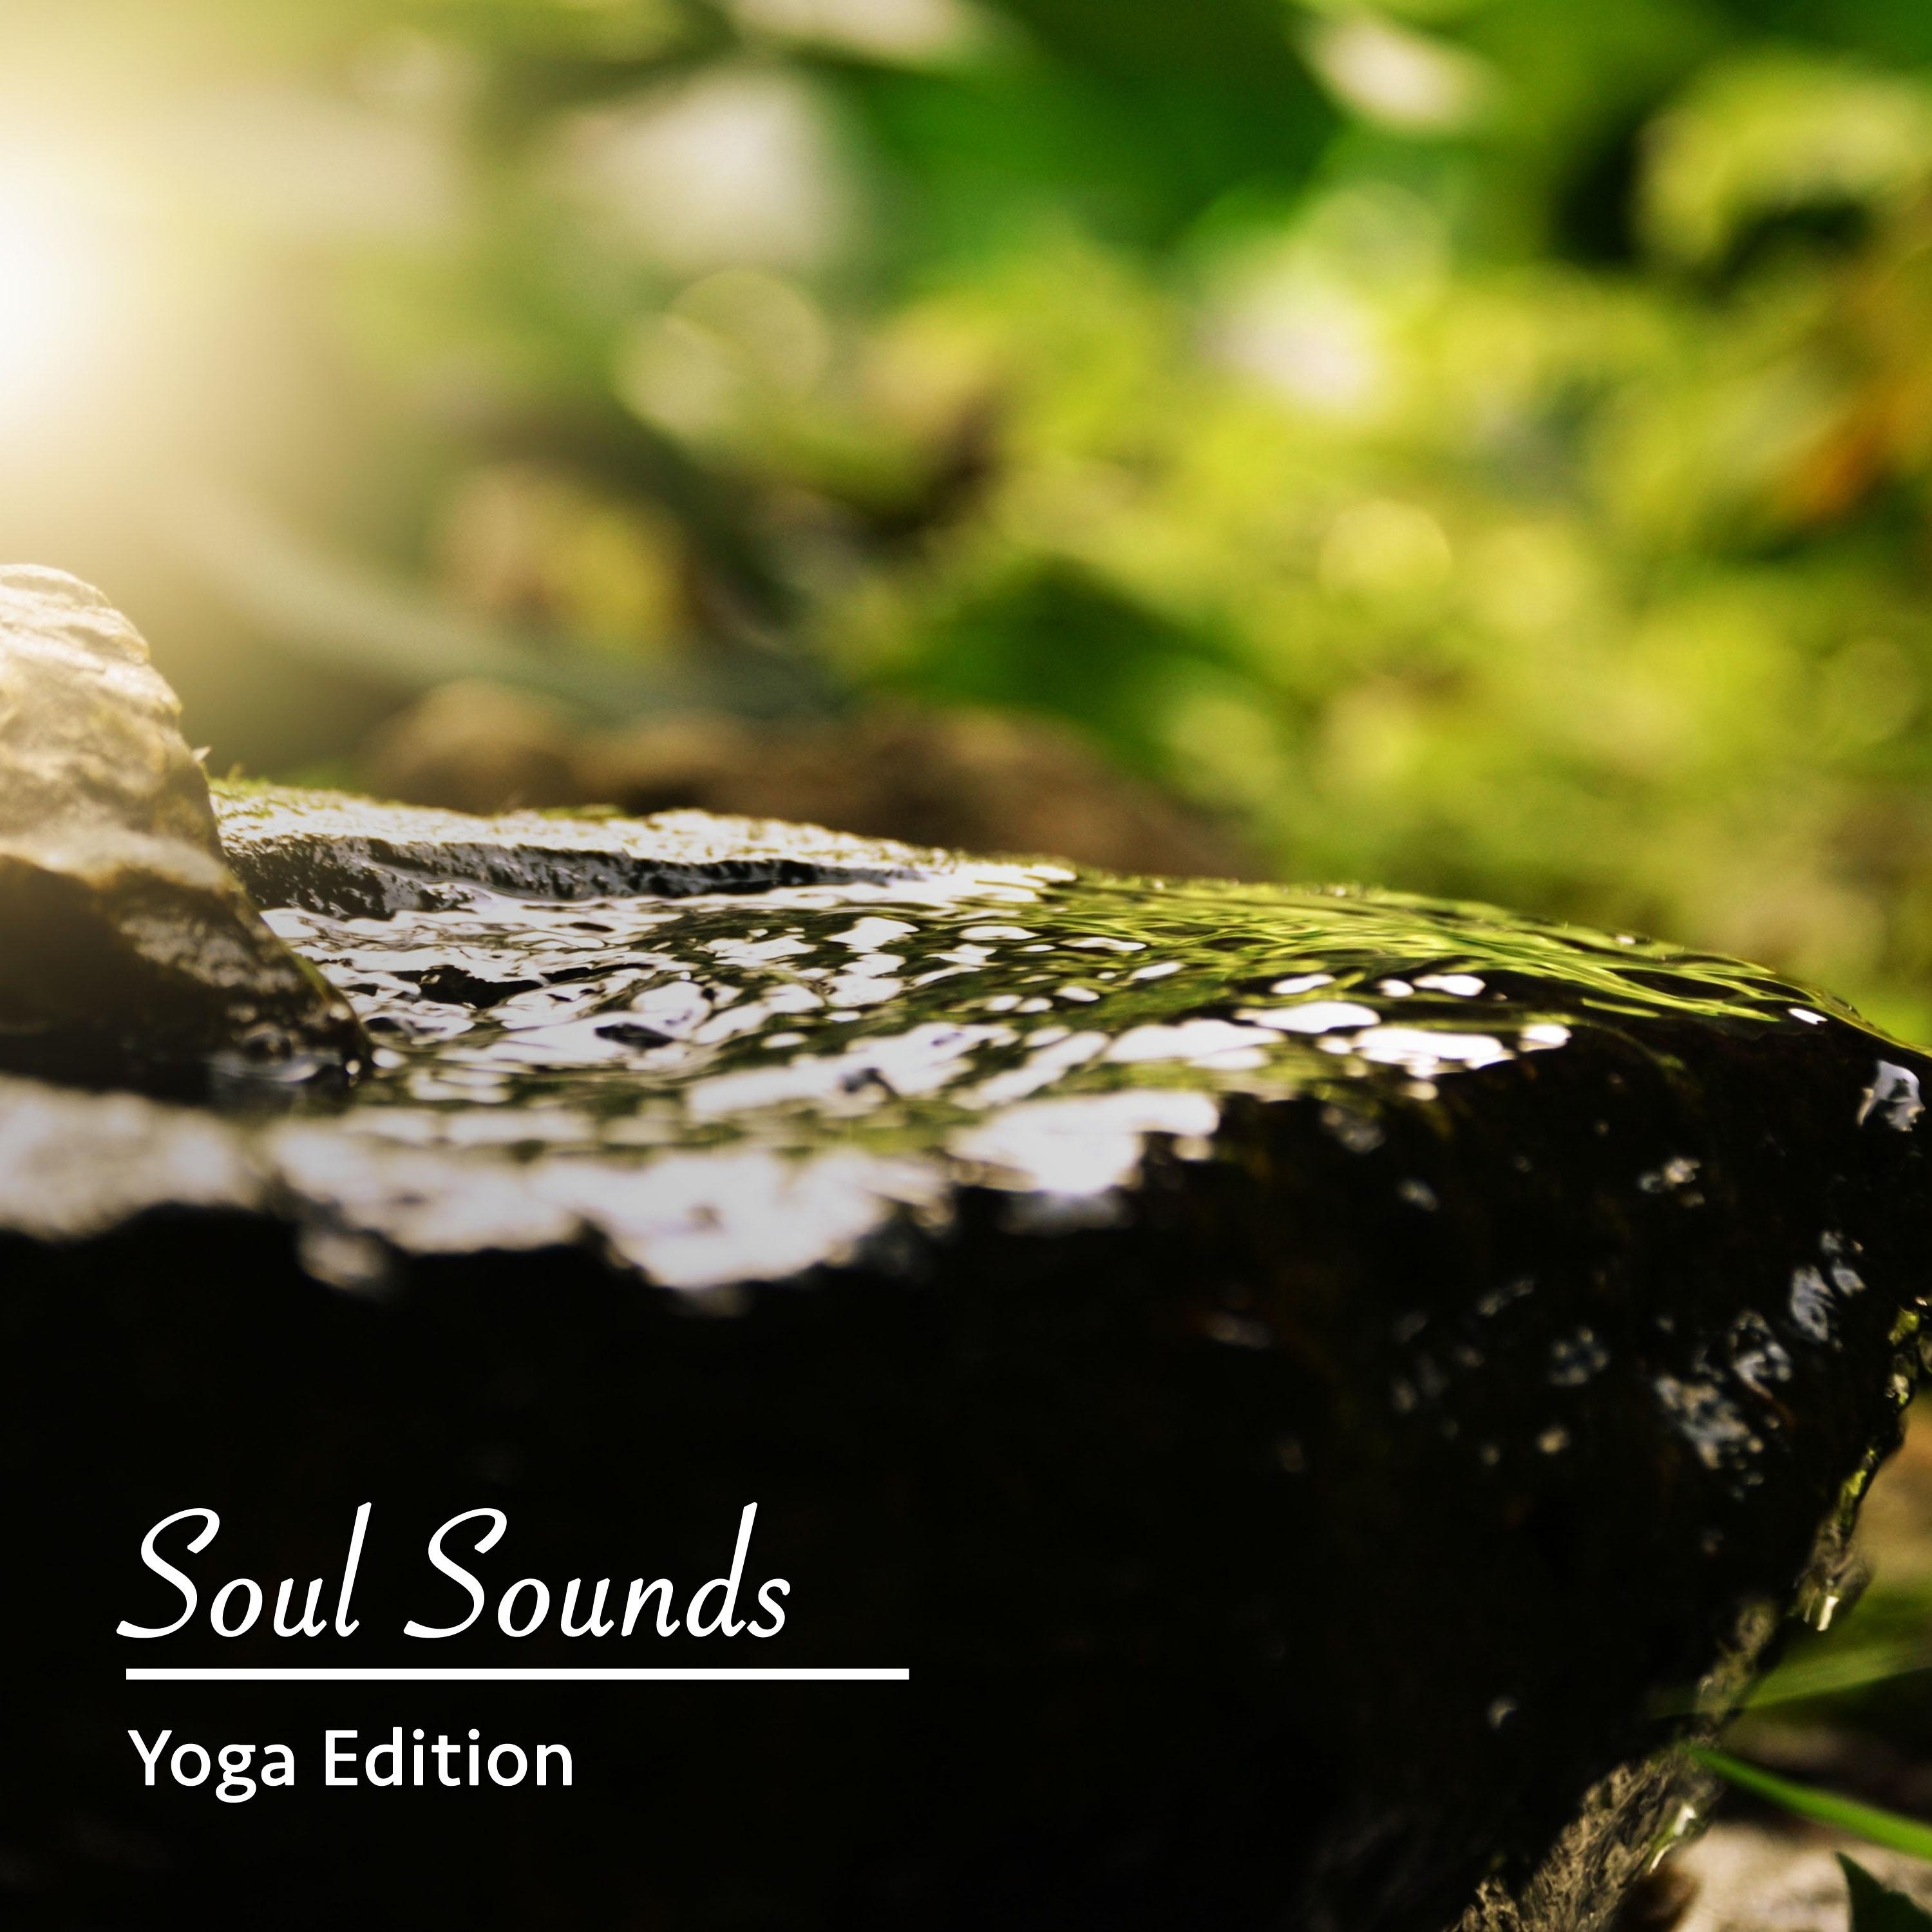 12 Soul Sounds: Yoga Edition